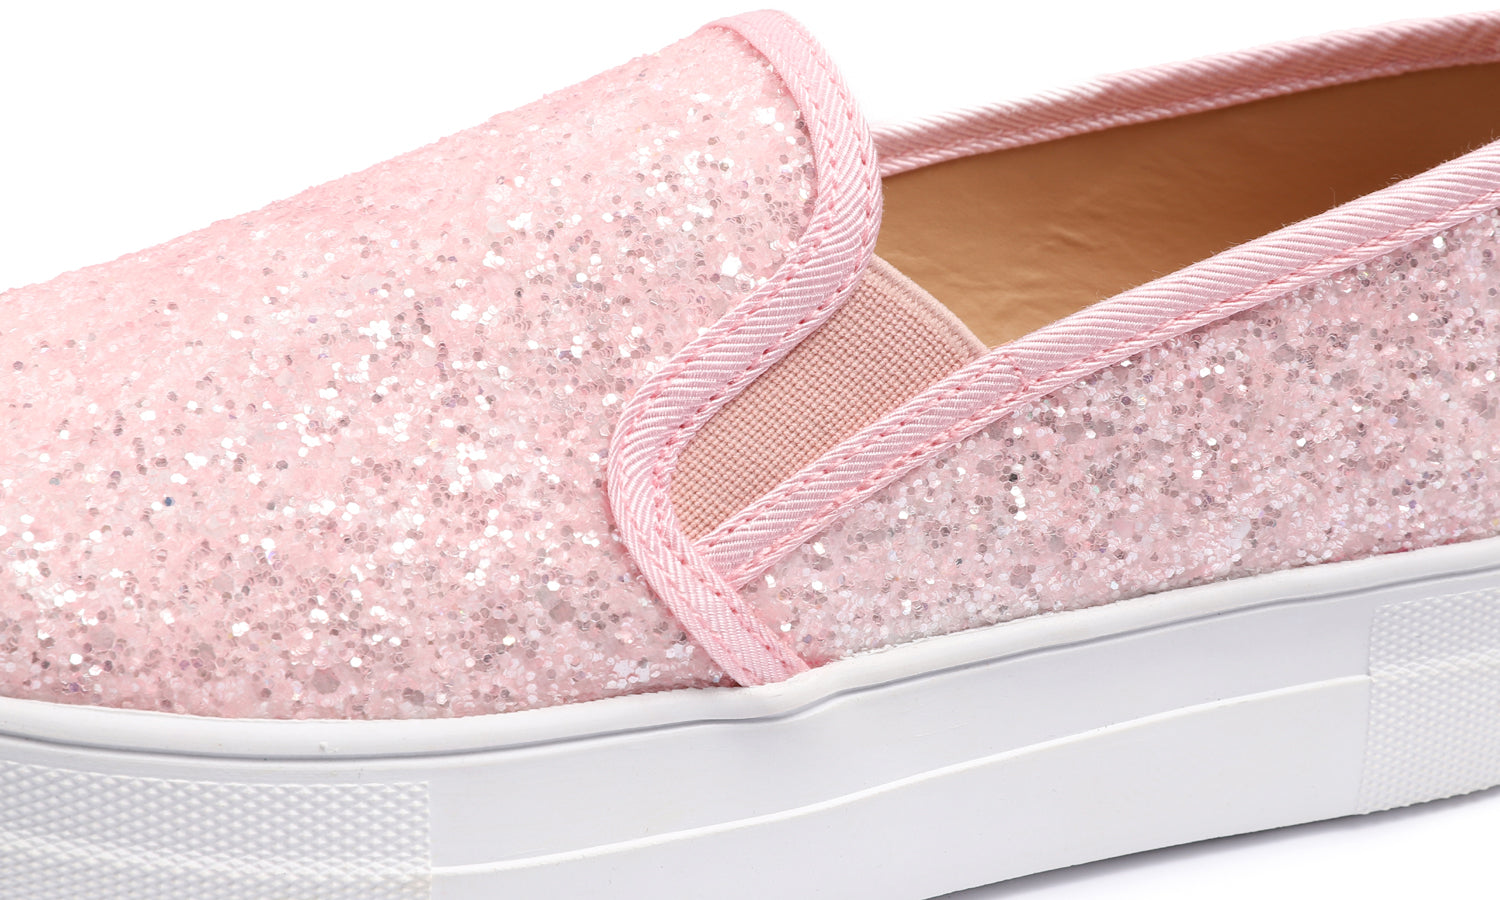 Feversole Women's Glitter Baby Pink Platform Slip On Sneaker Casual Flat Loafers